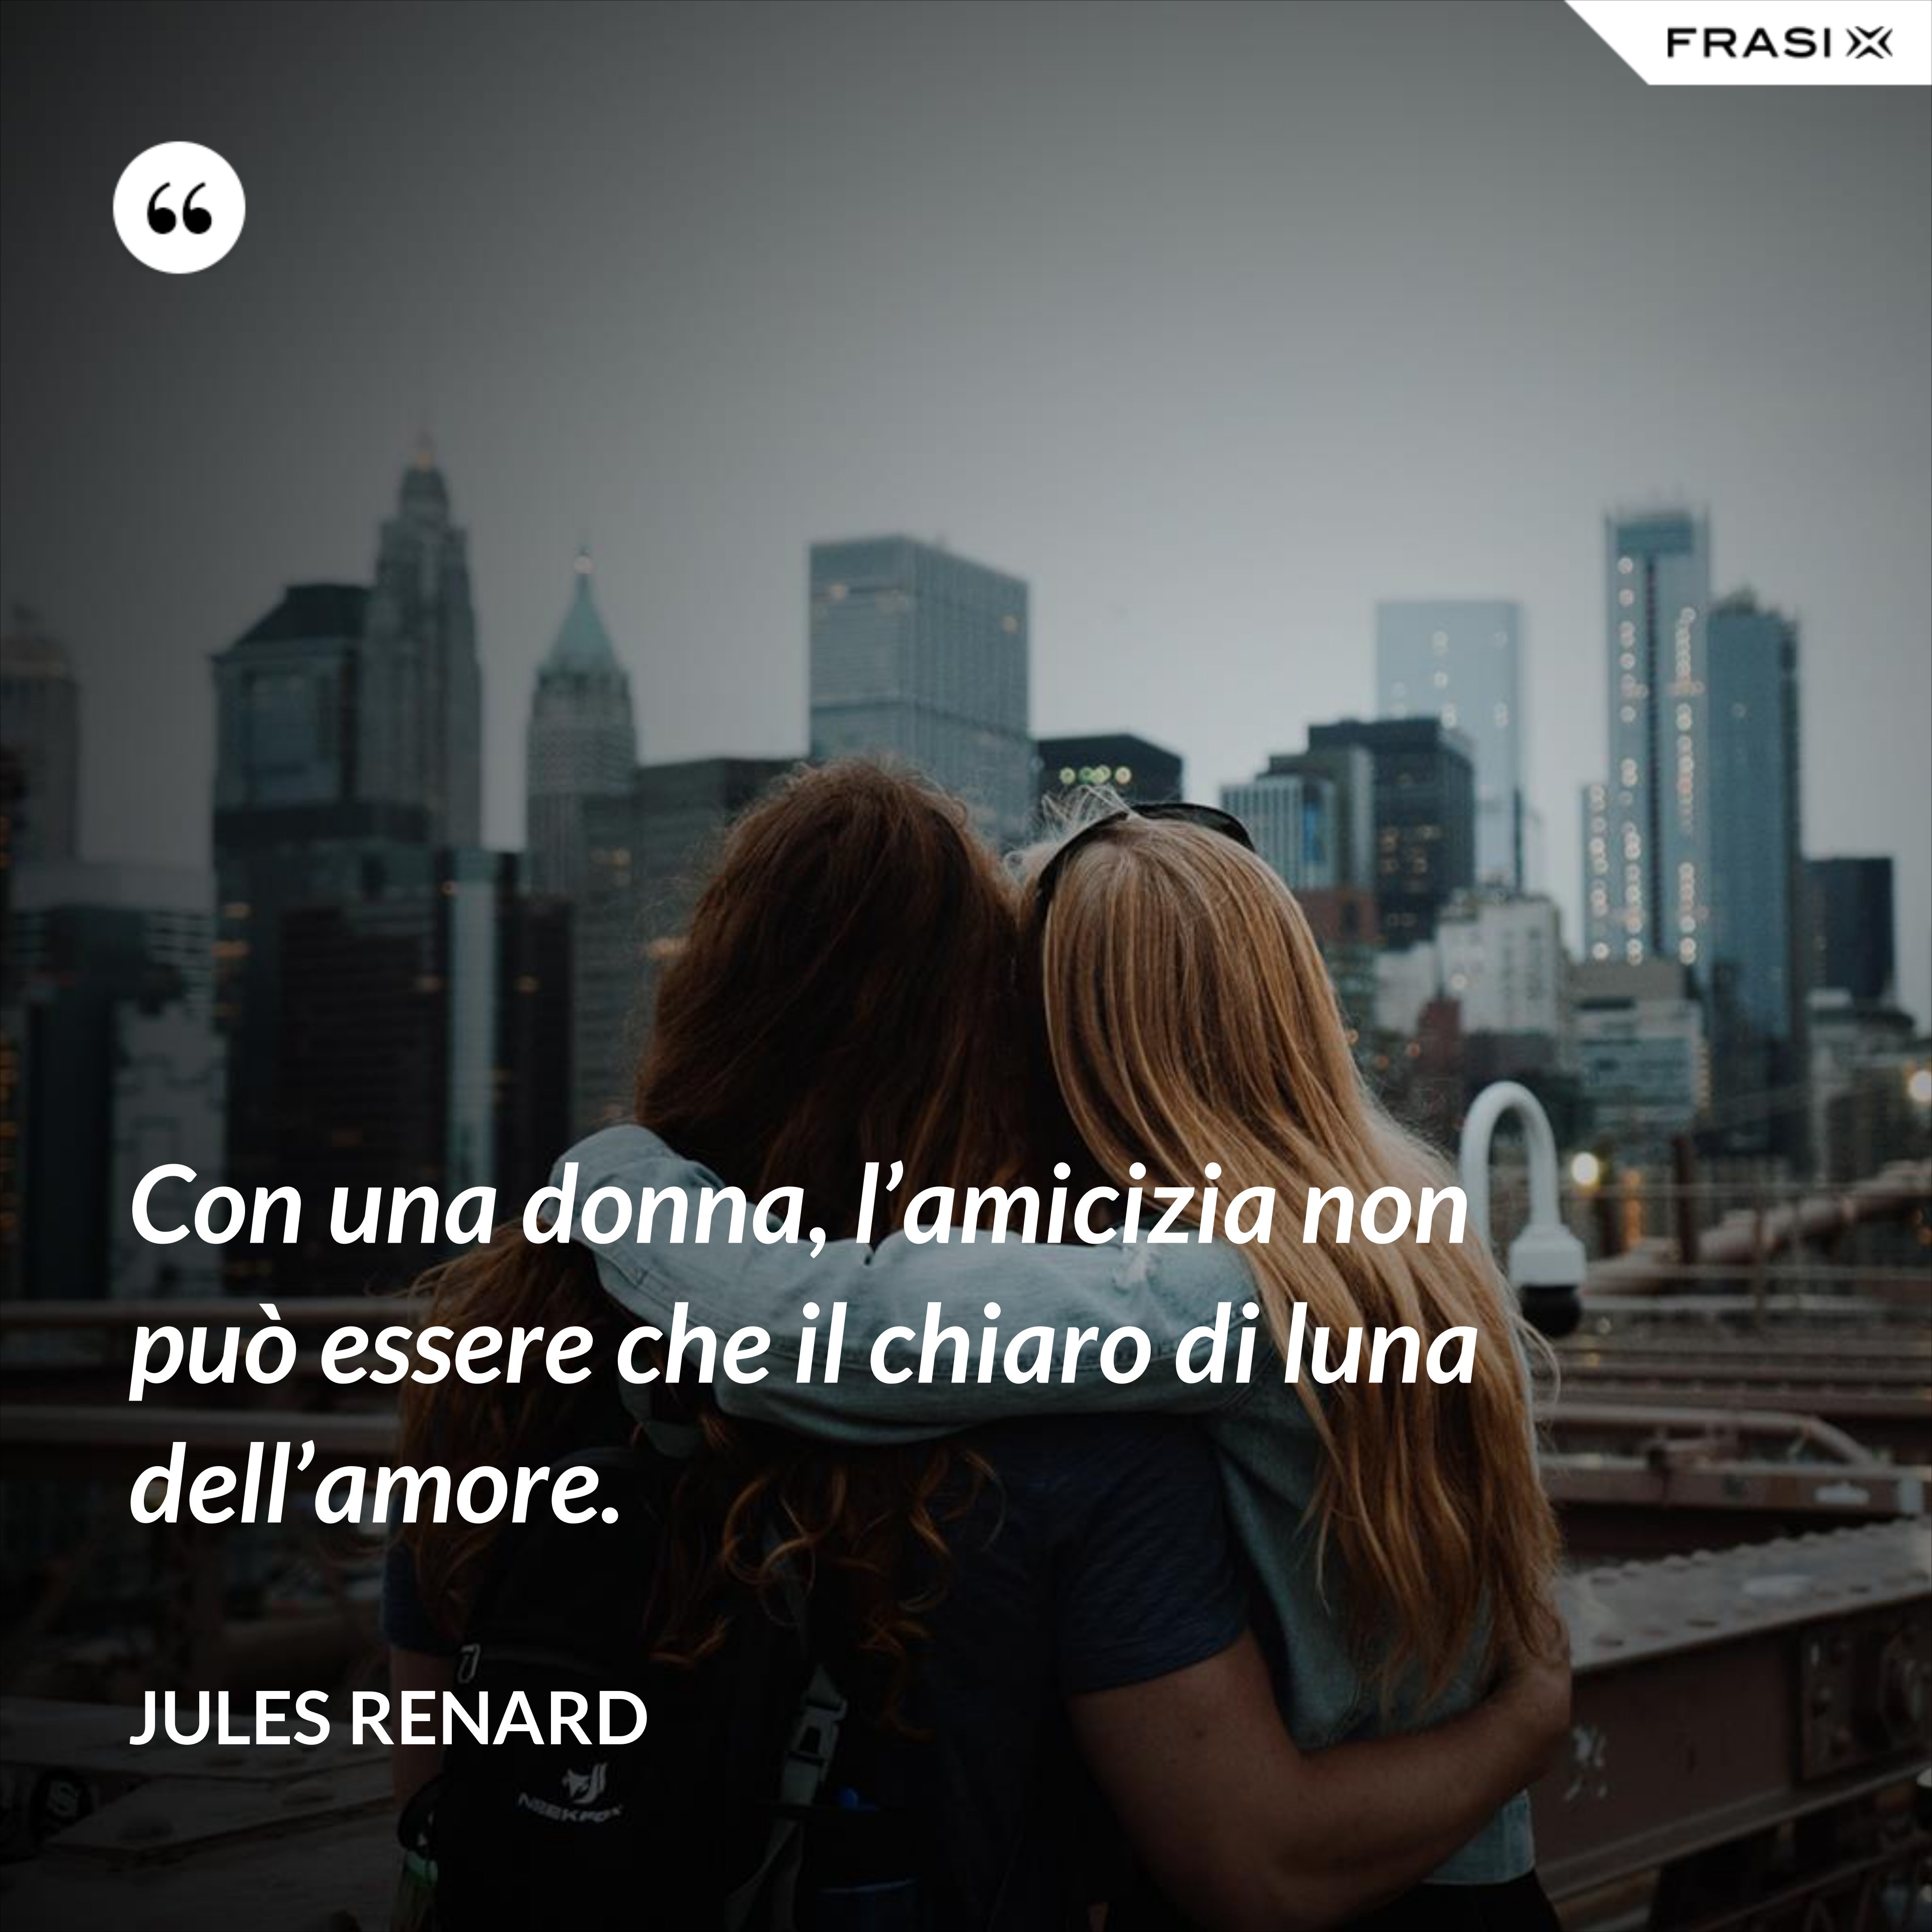 Con una donna, l’amicizia non può essere che il chiaro di luna dell’amore. - Jules Renard